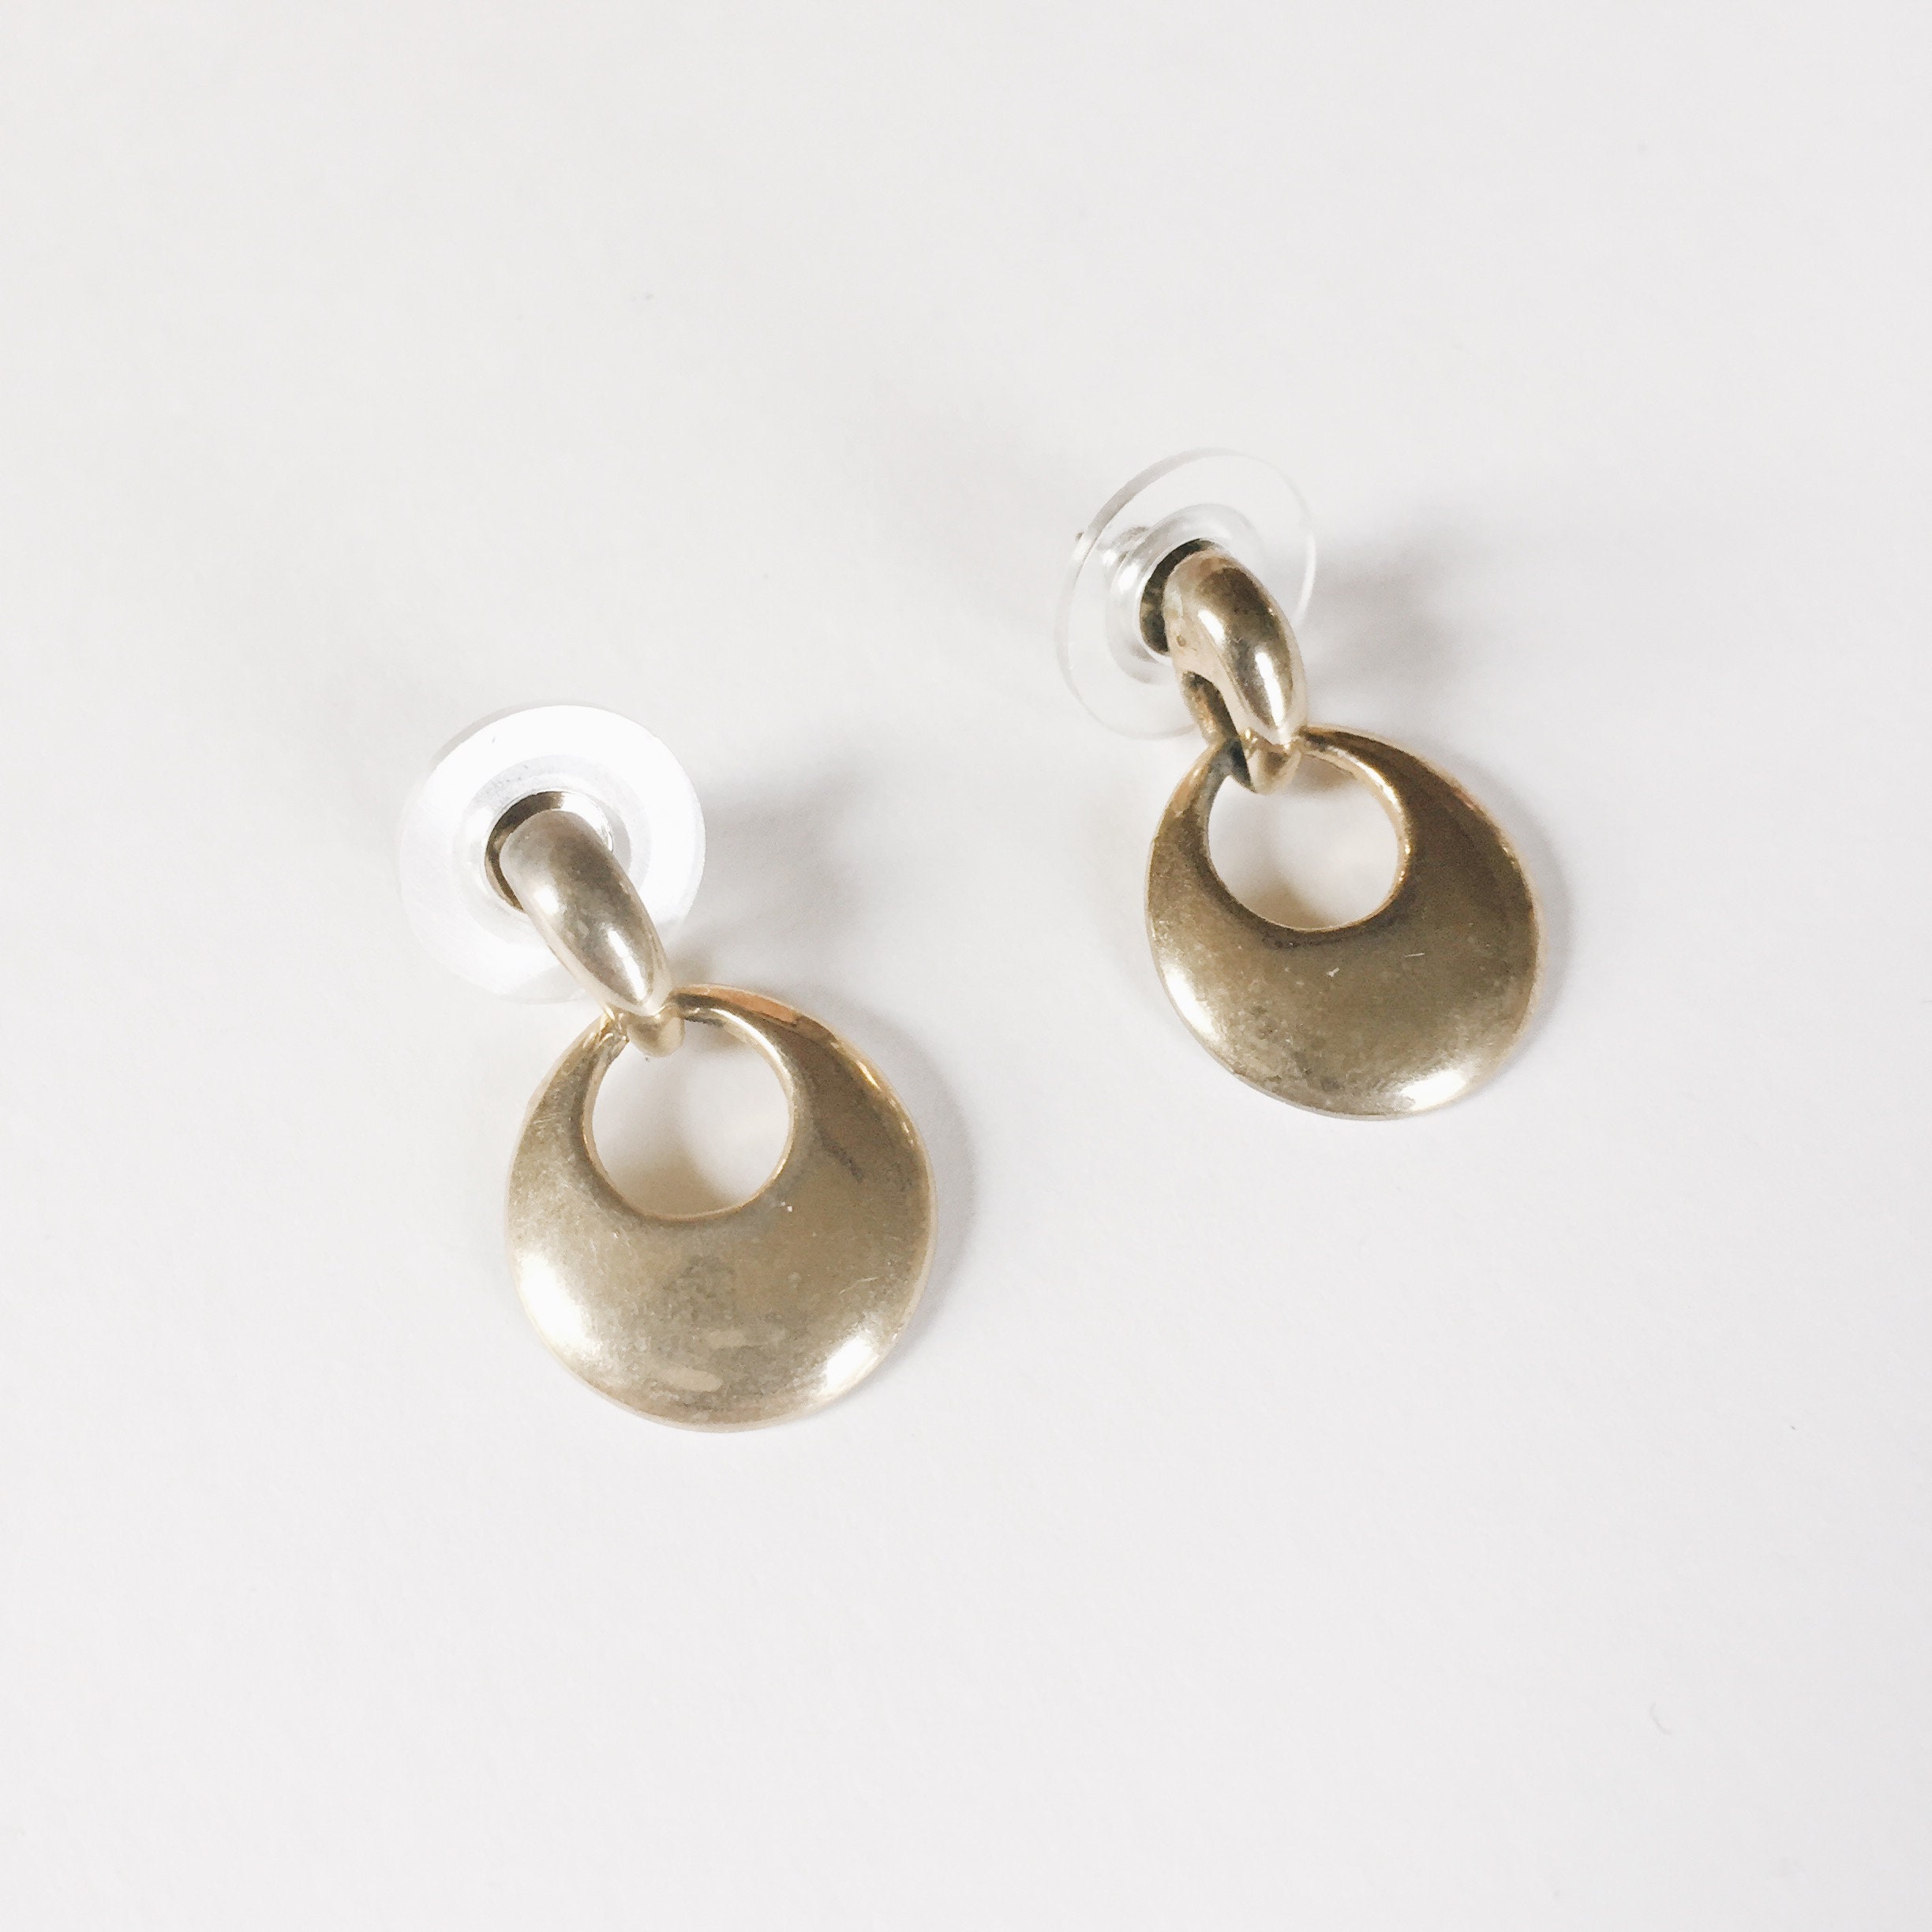 door knocker earrings | pierced earrings | small gold earrings ...